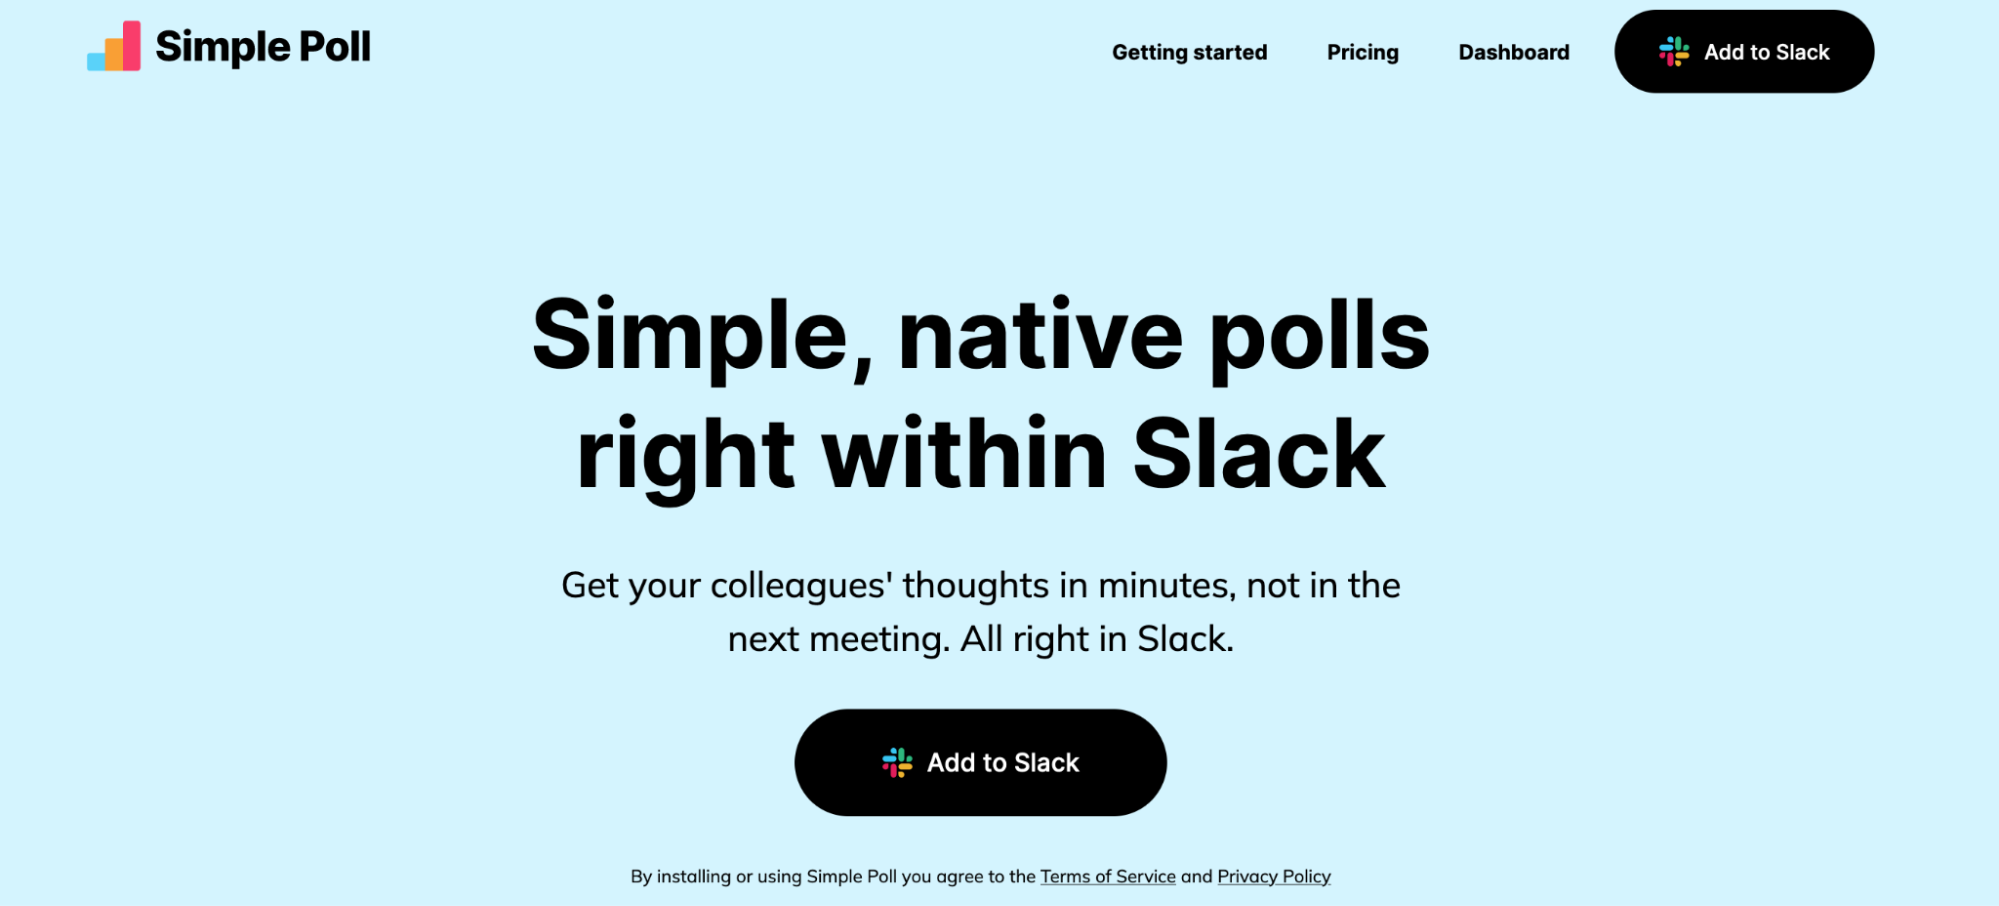 Poll: What about an ICQ server? - Polls - MessengerGeek